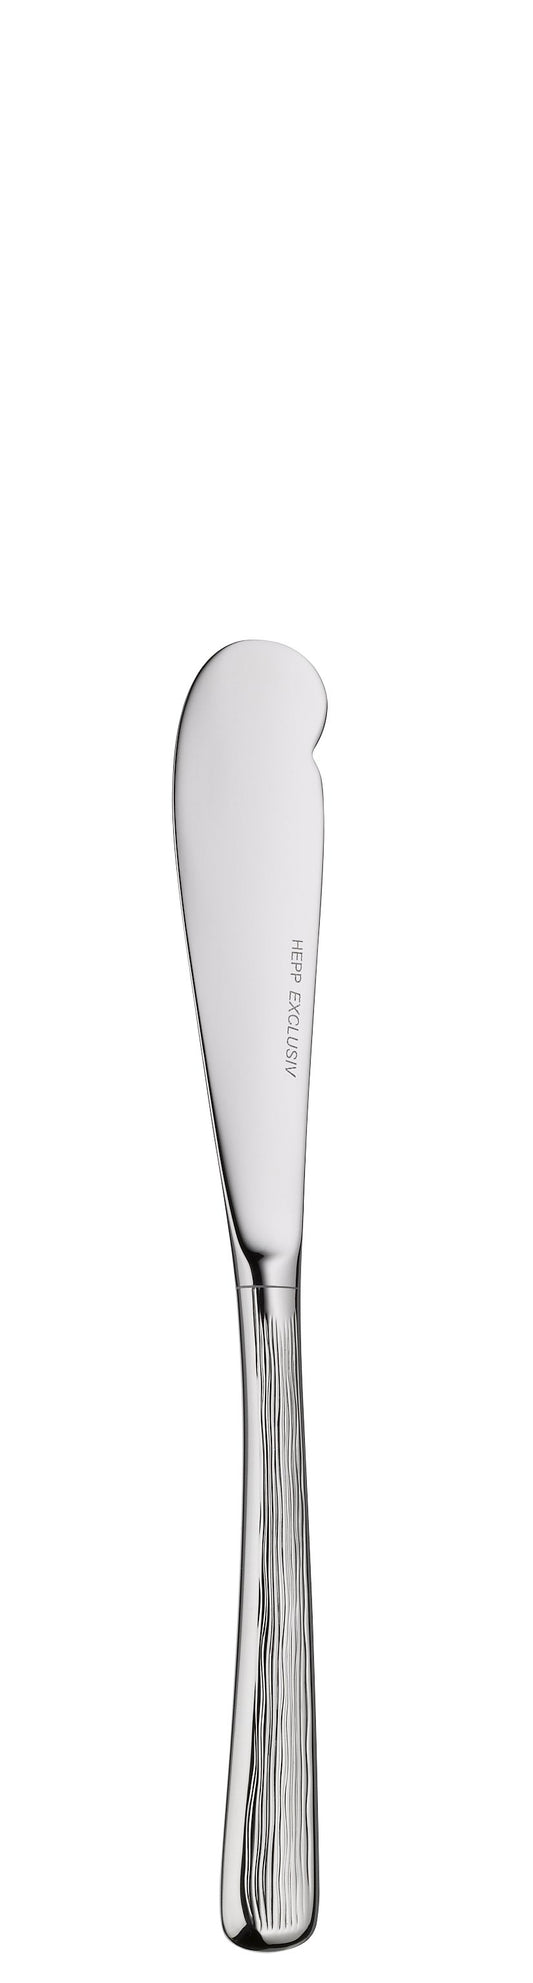 Butter knife HH MESCANA 170mm